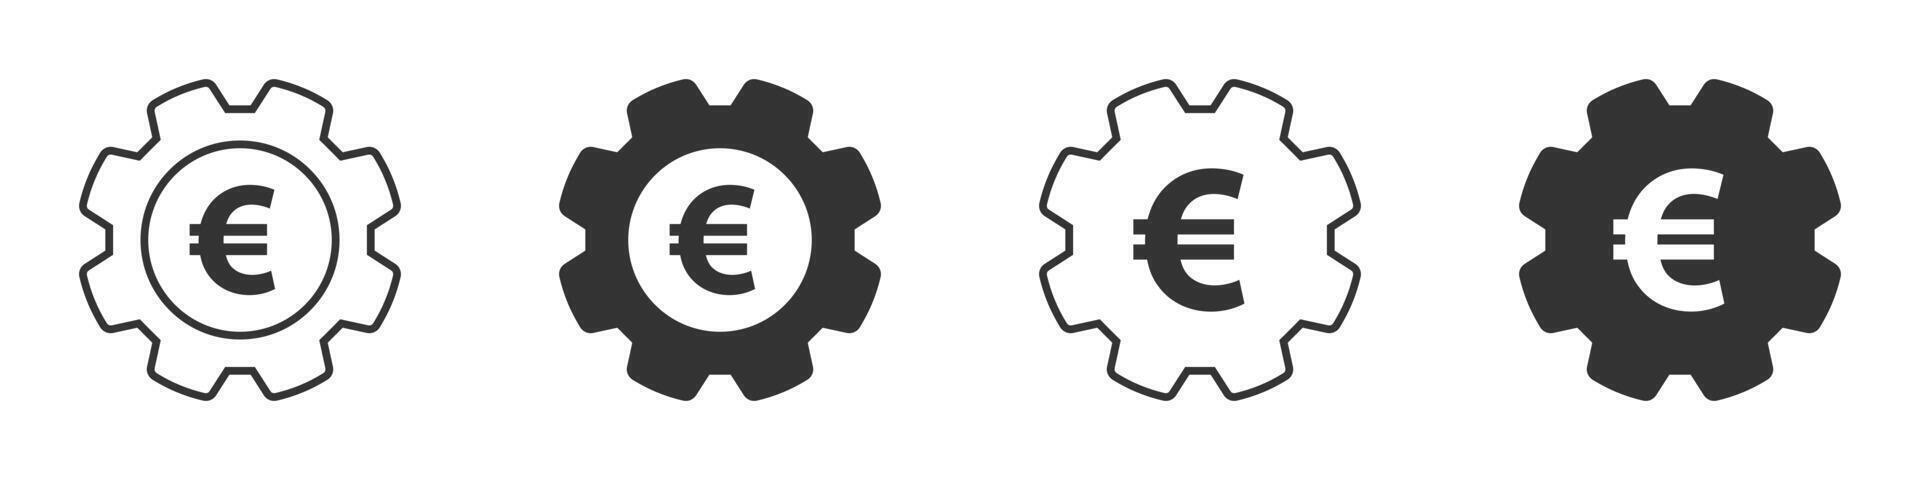 Ausrüstung Symbol mit Euro Zeichen innen. Zahnrad mit Geld Symbol. Vektor Illustration.